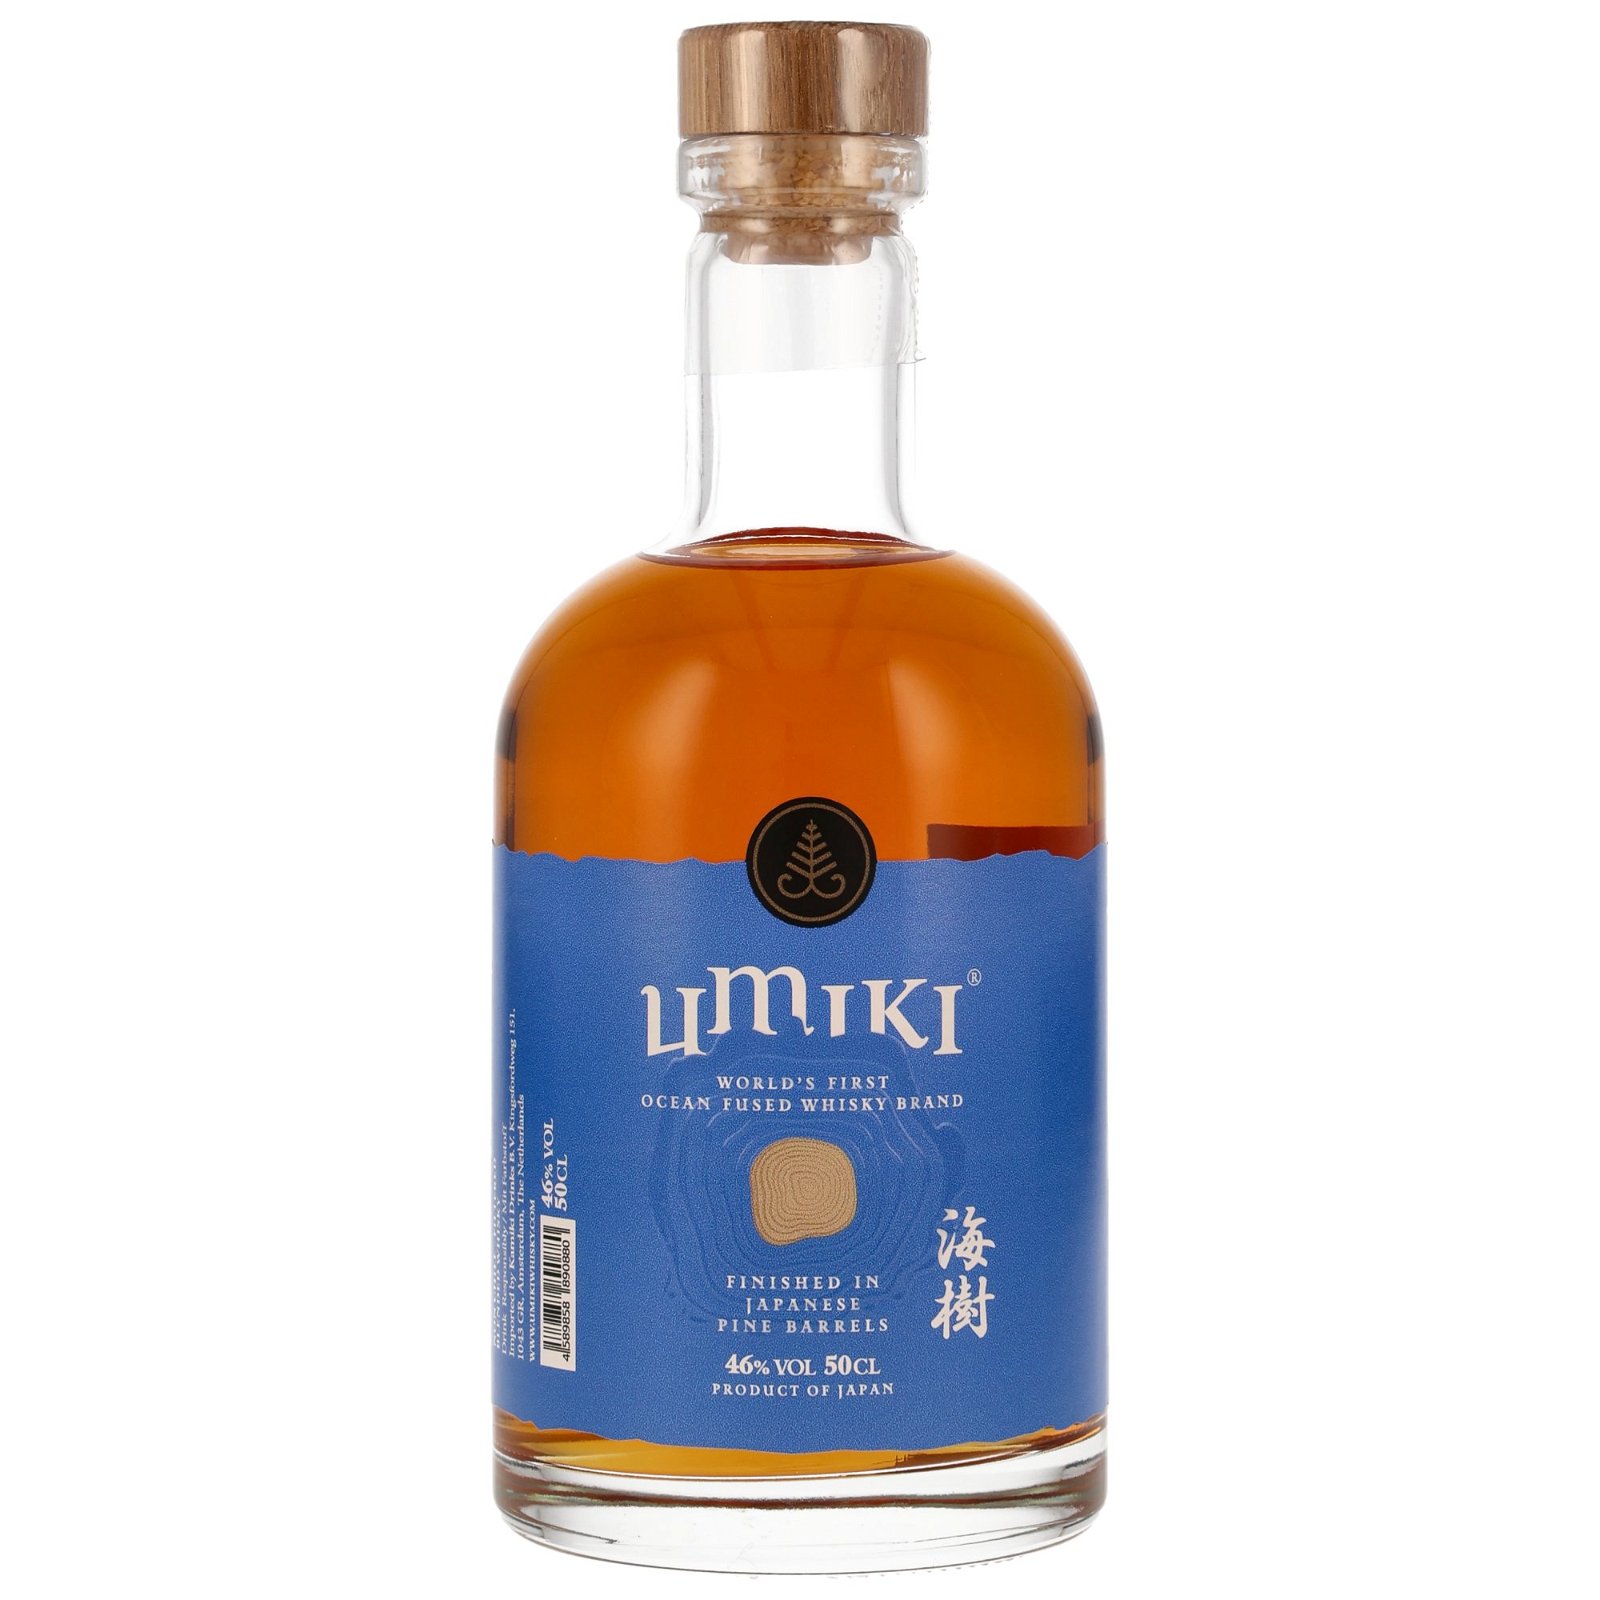 Umiki Ocean Fused Whisky Pine Barrel Finish